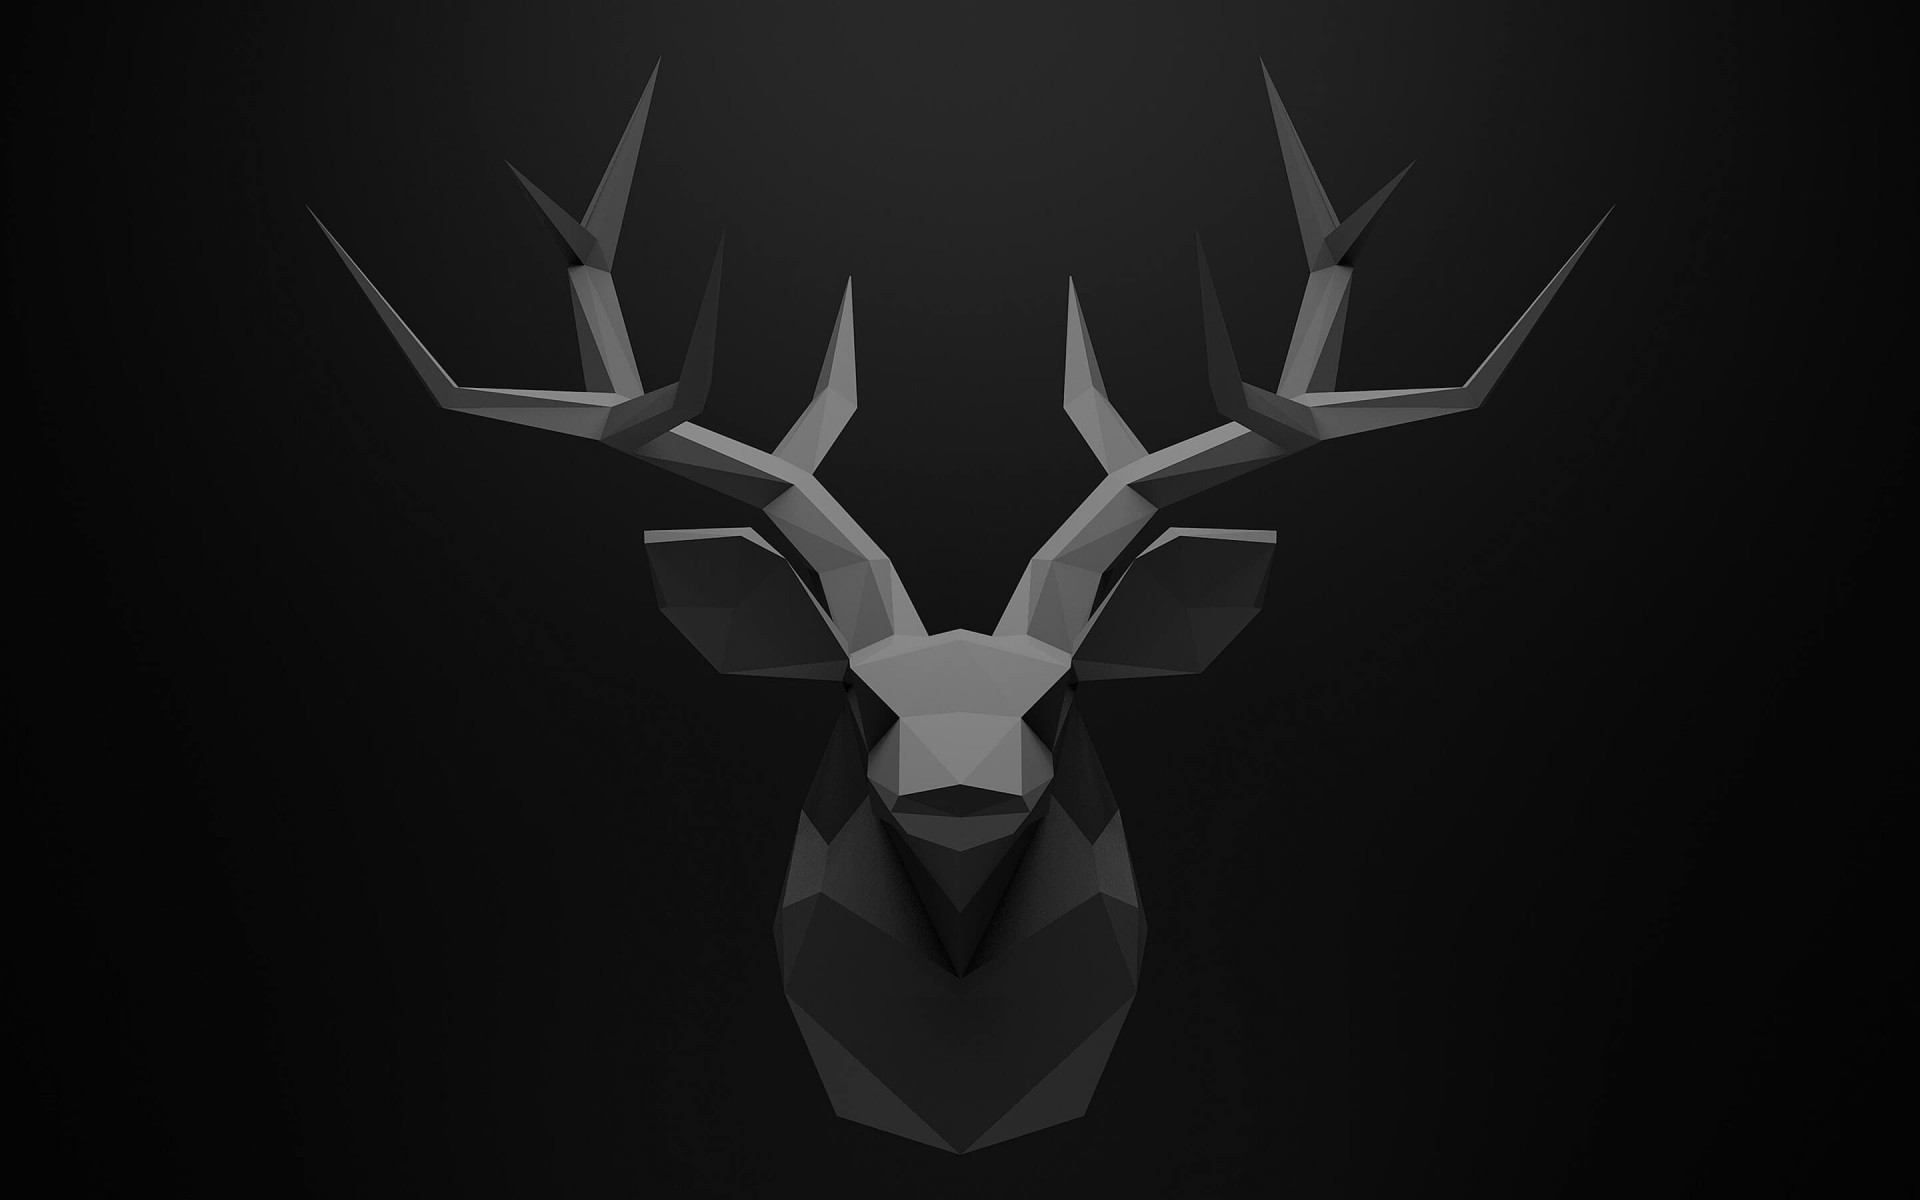 Low Poly Deer Head Wallpaper for Desktop 1920x1200